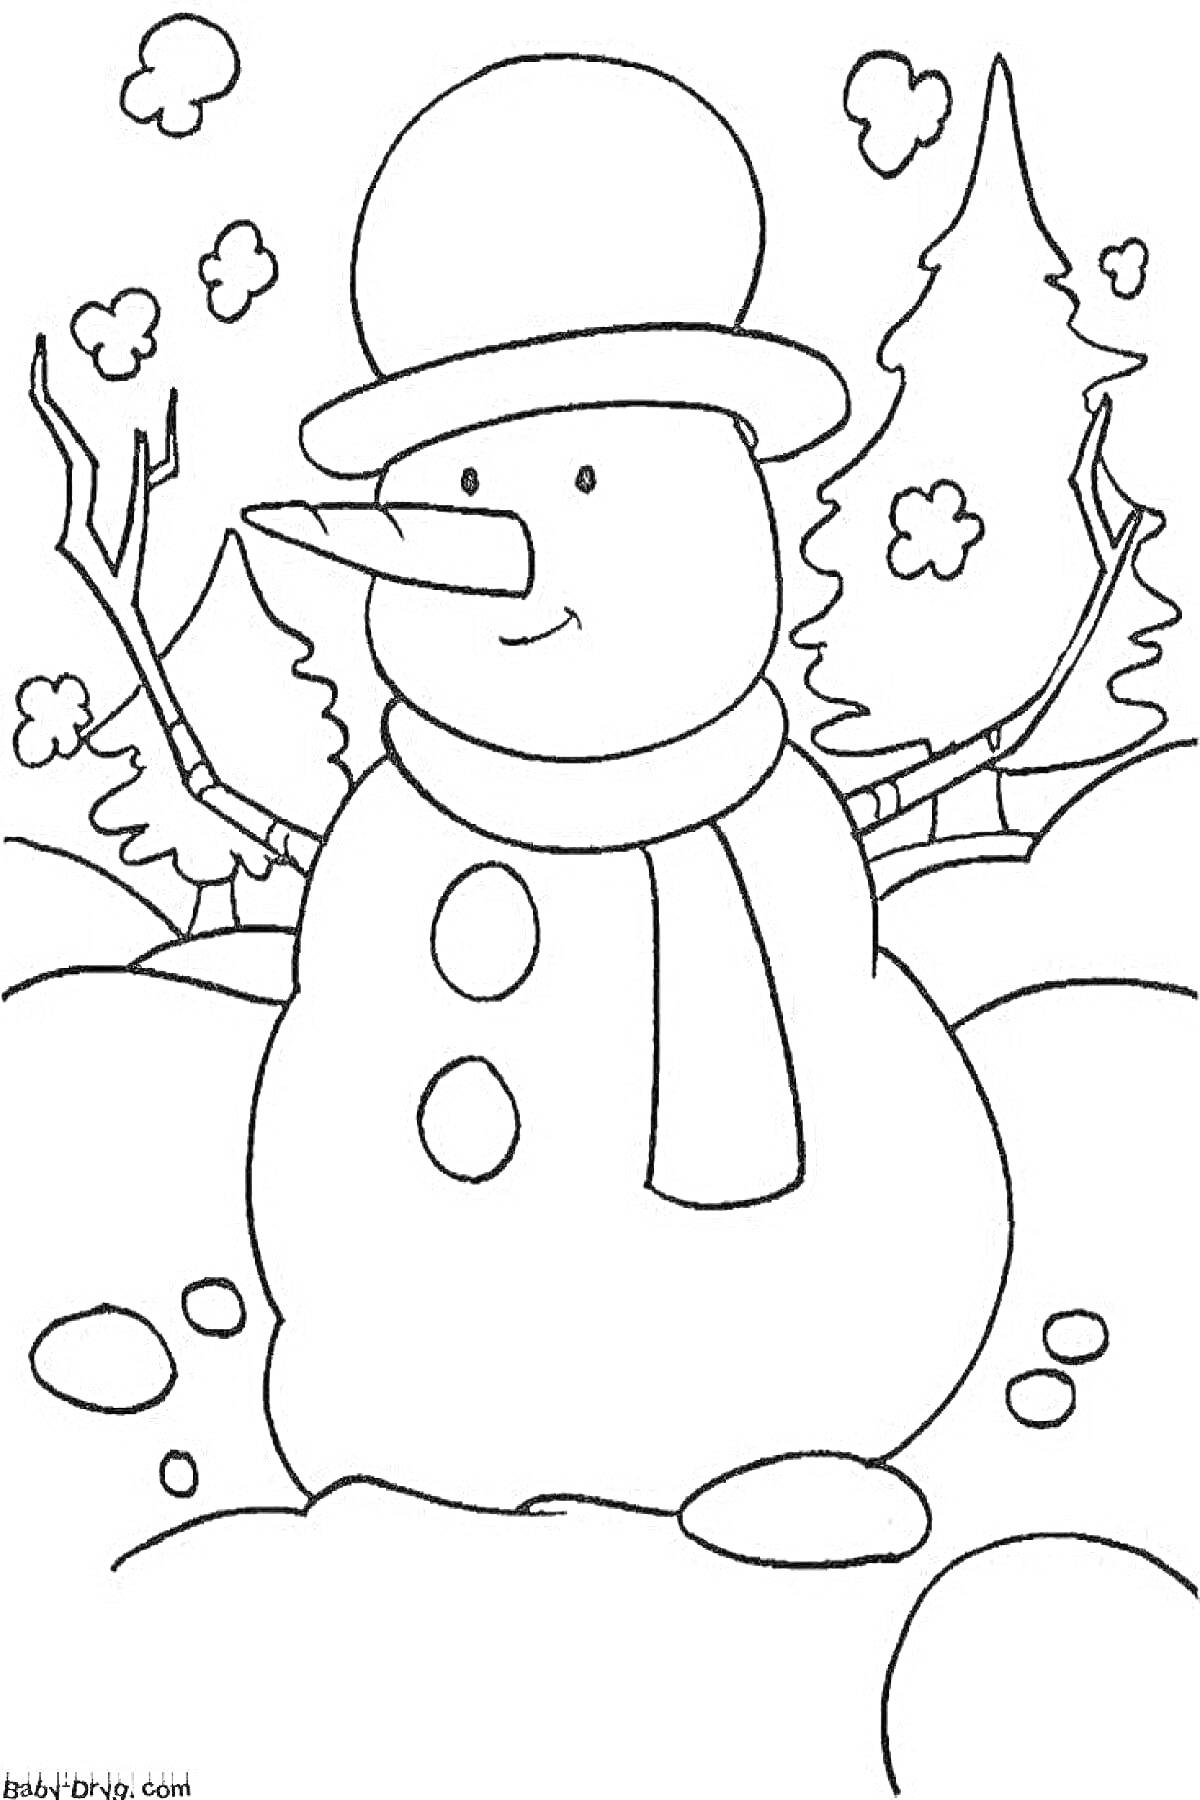 Раскраска Снеговичок в зимнем лесу с ёлками и снегом